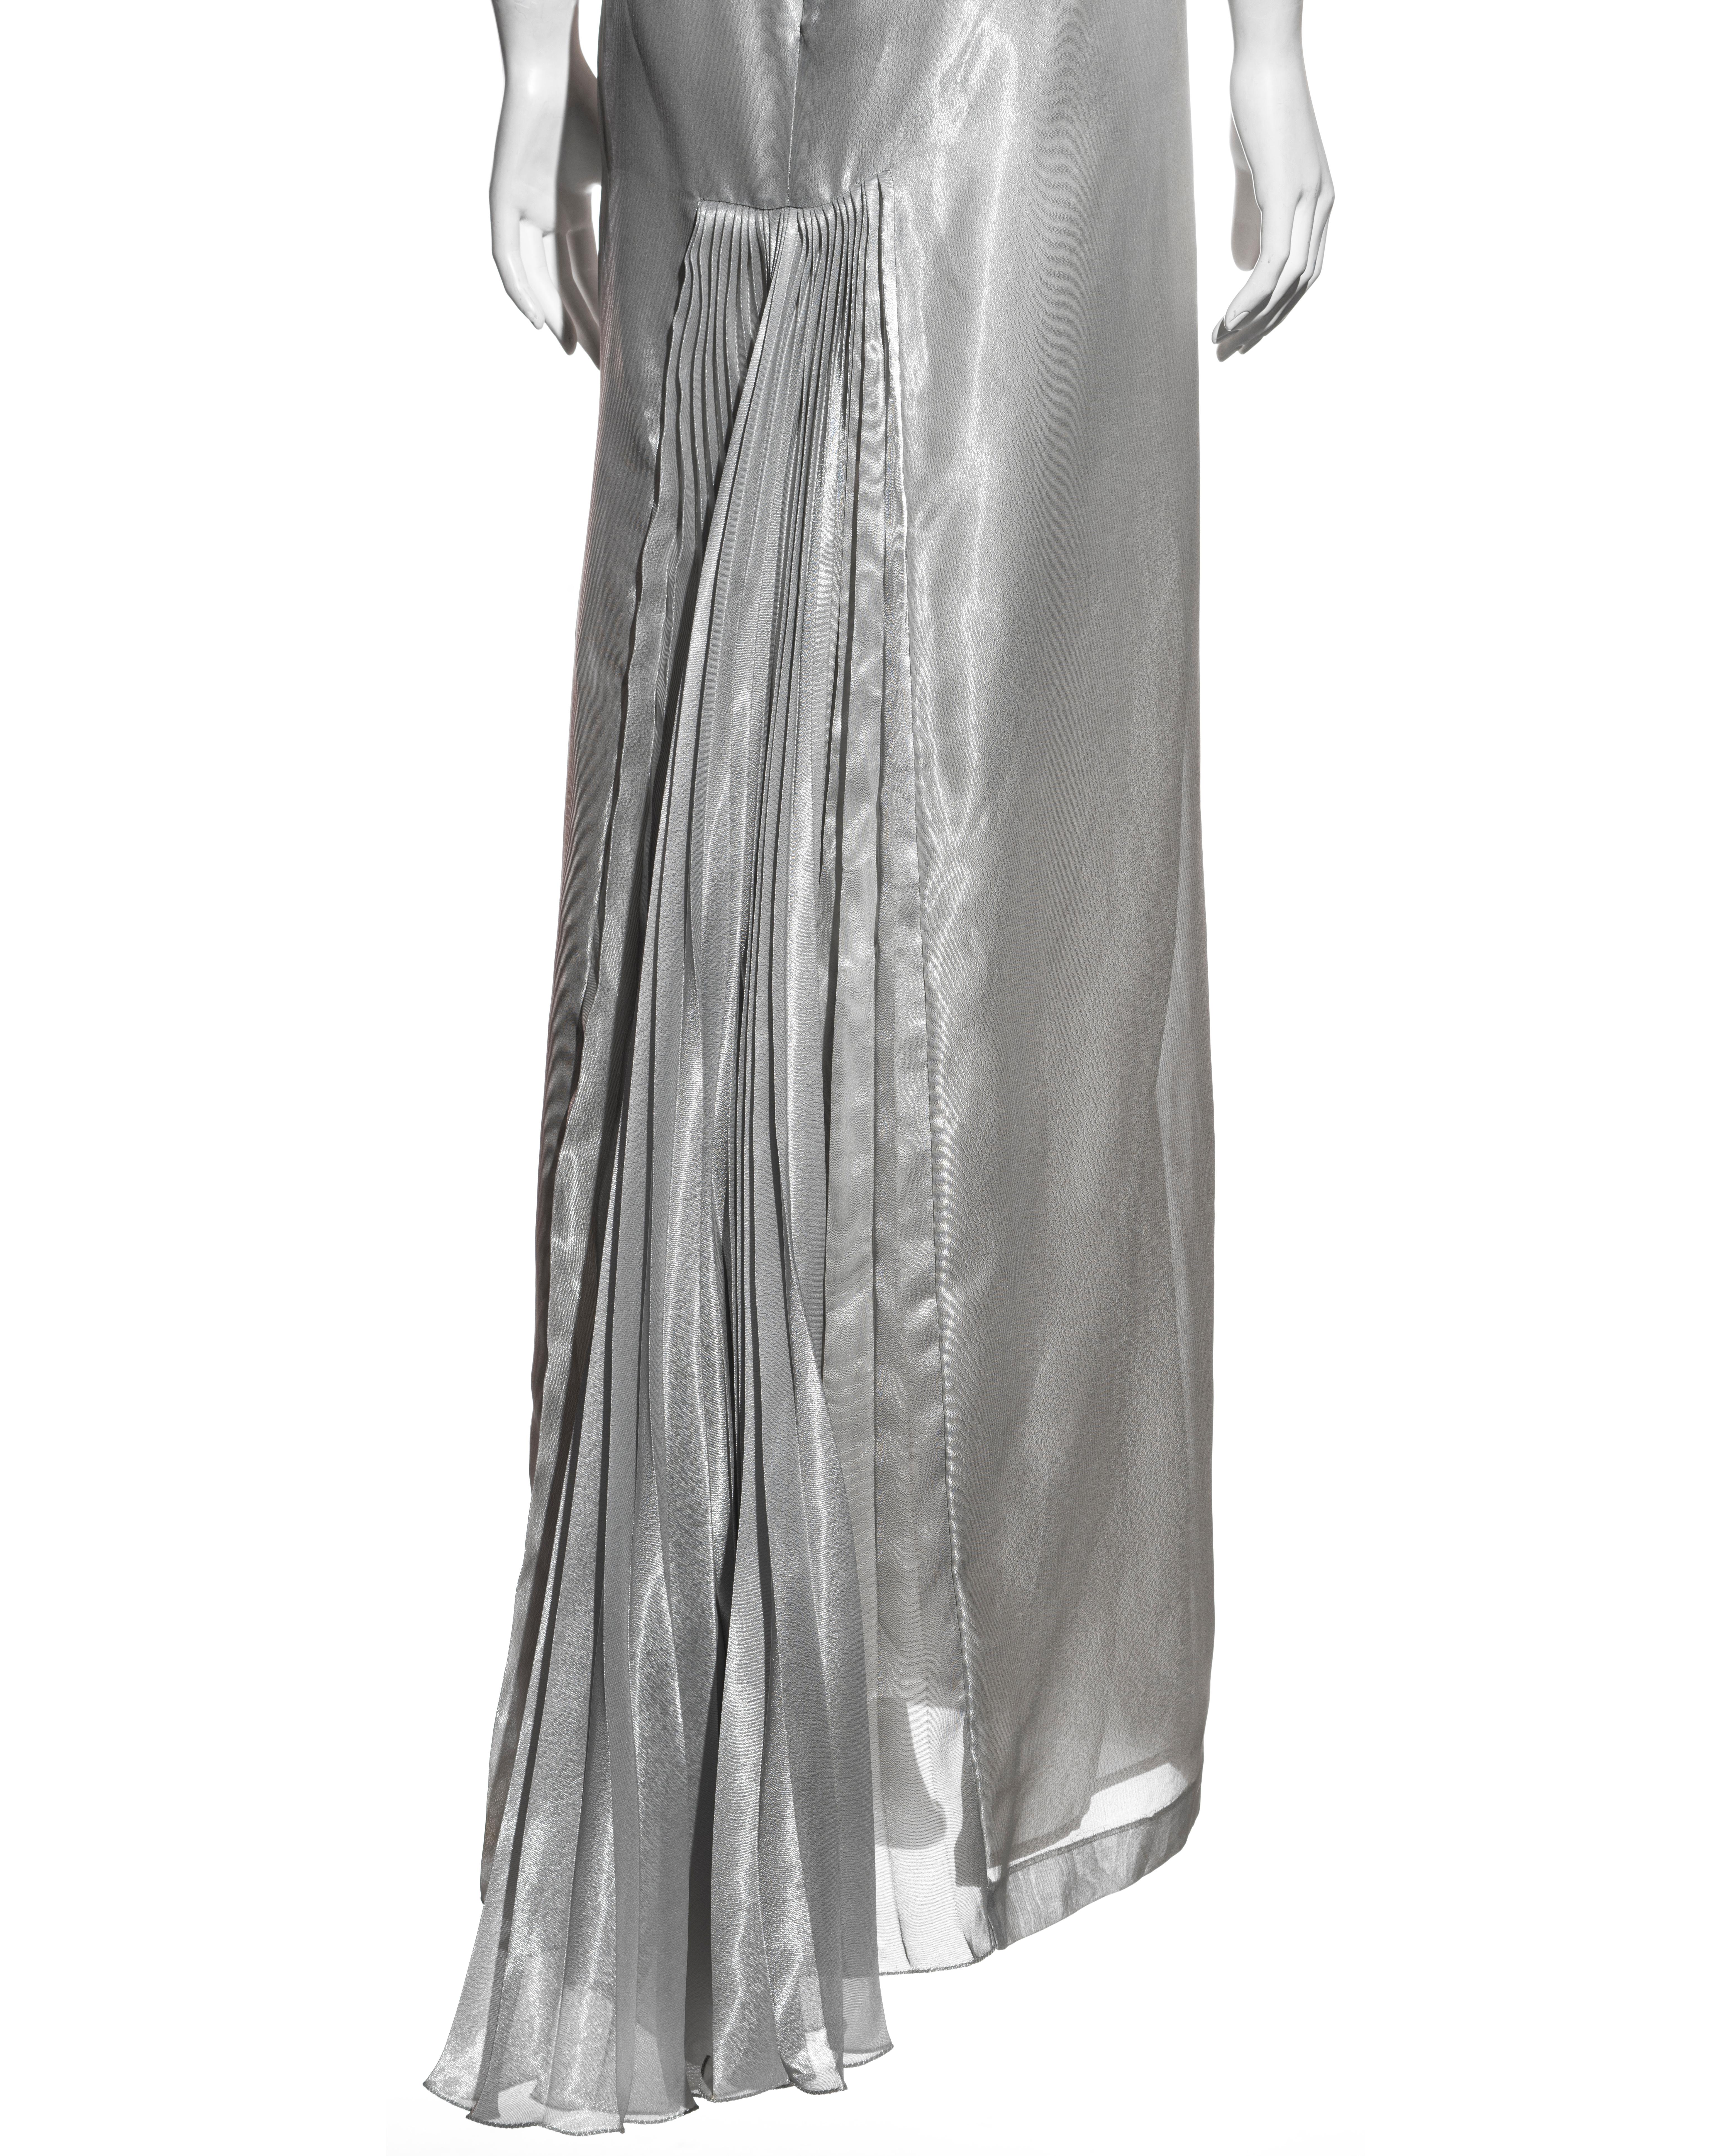 Alexander McQueen metallic silver silk lamé open-back evening dress, ss 1997 For Sale 3